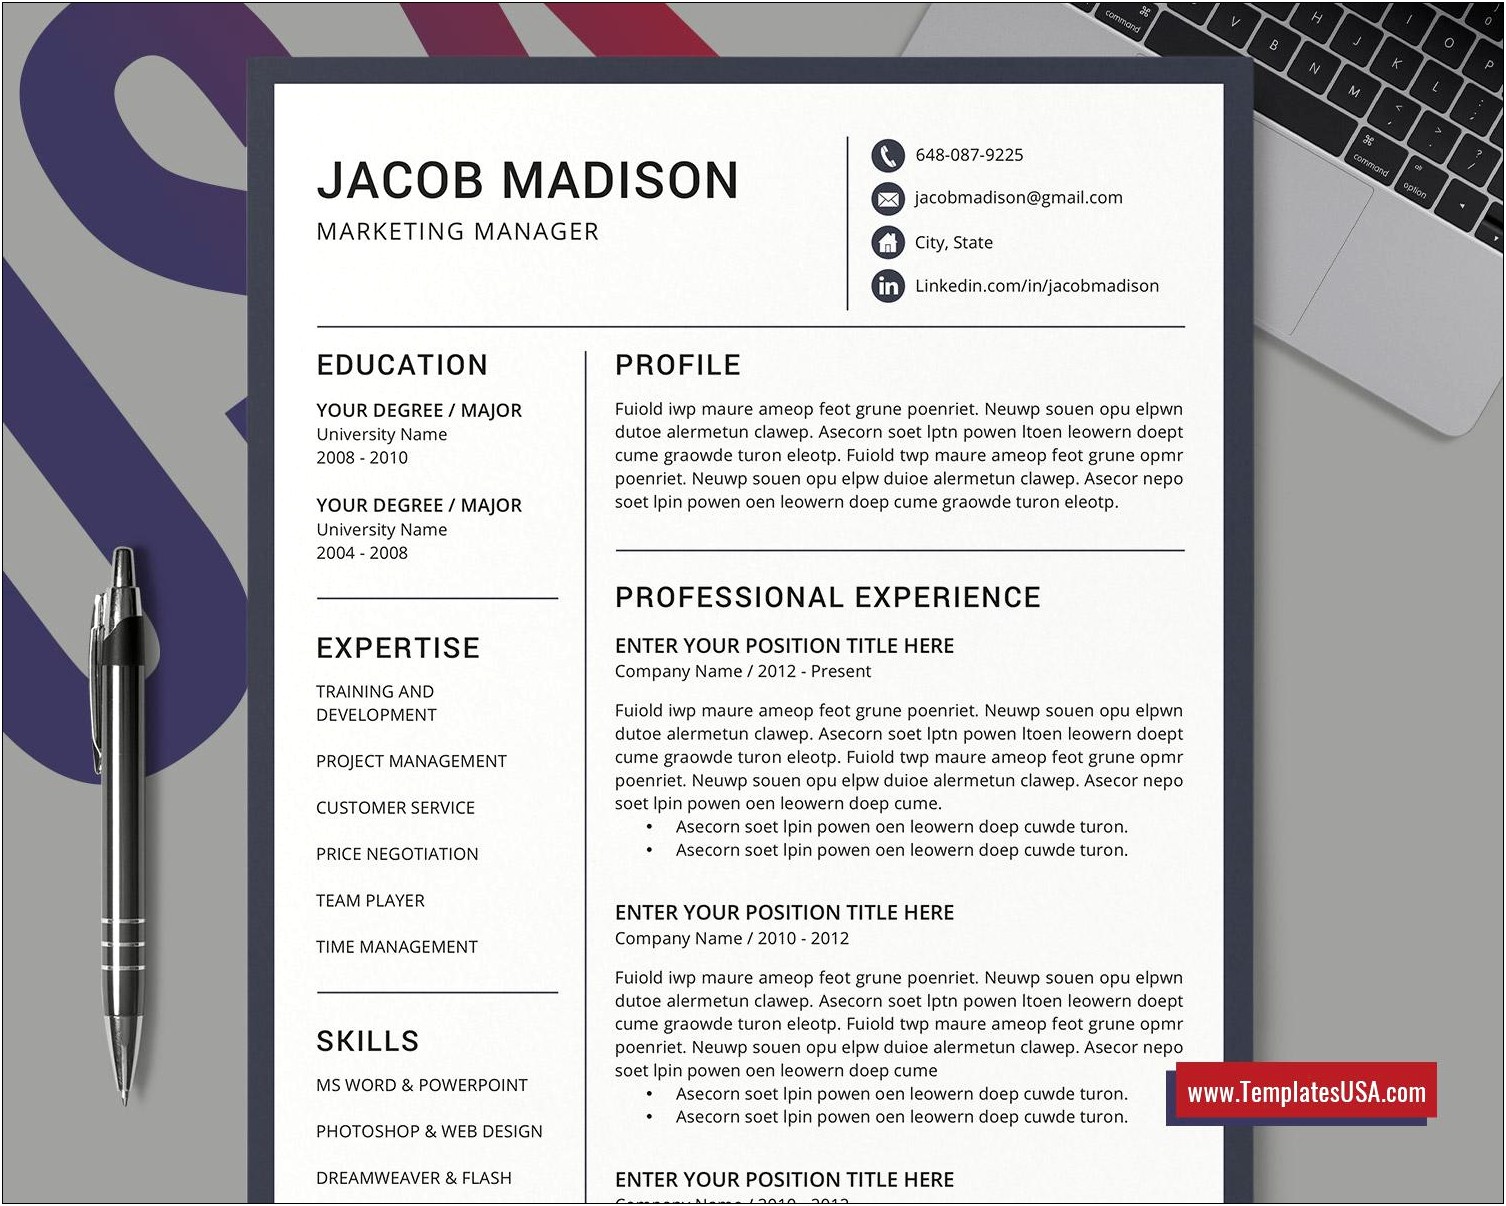 Sample Of Best Resume For Job Application